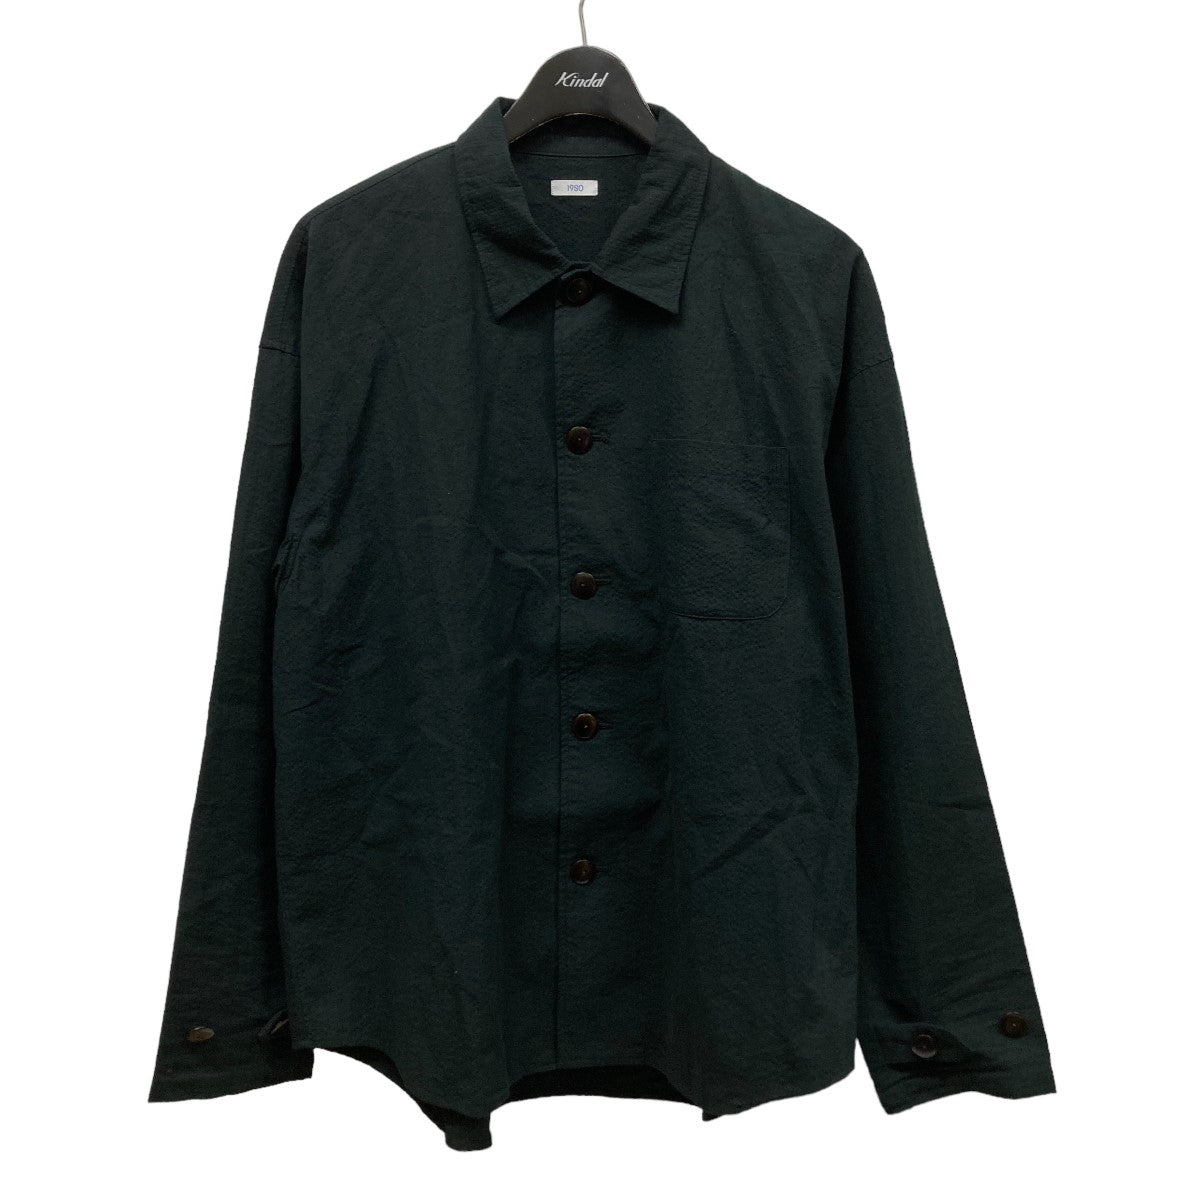 19SO(ナインティーンエスオー) シャツジャケット ブラック サイズ M 